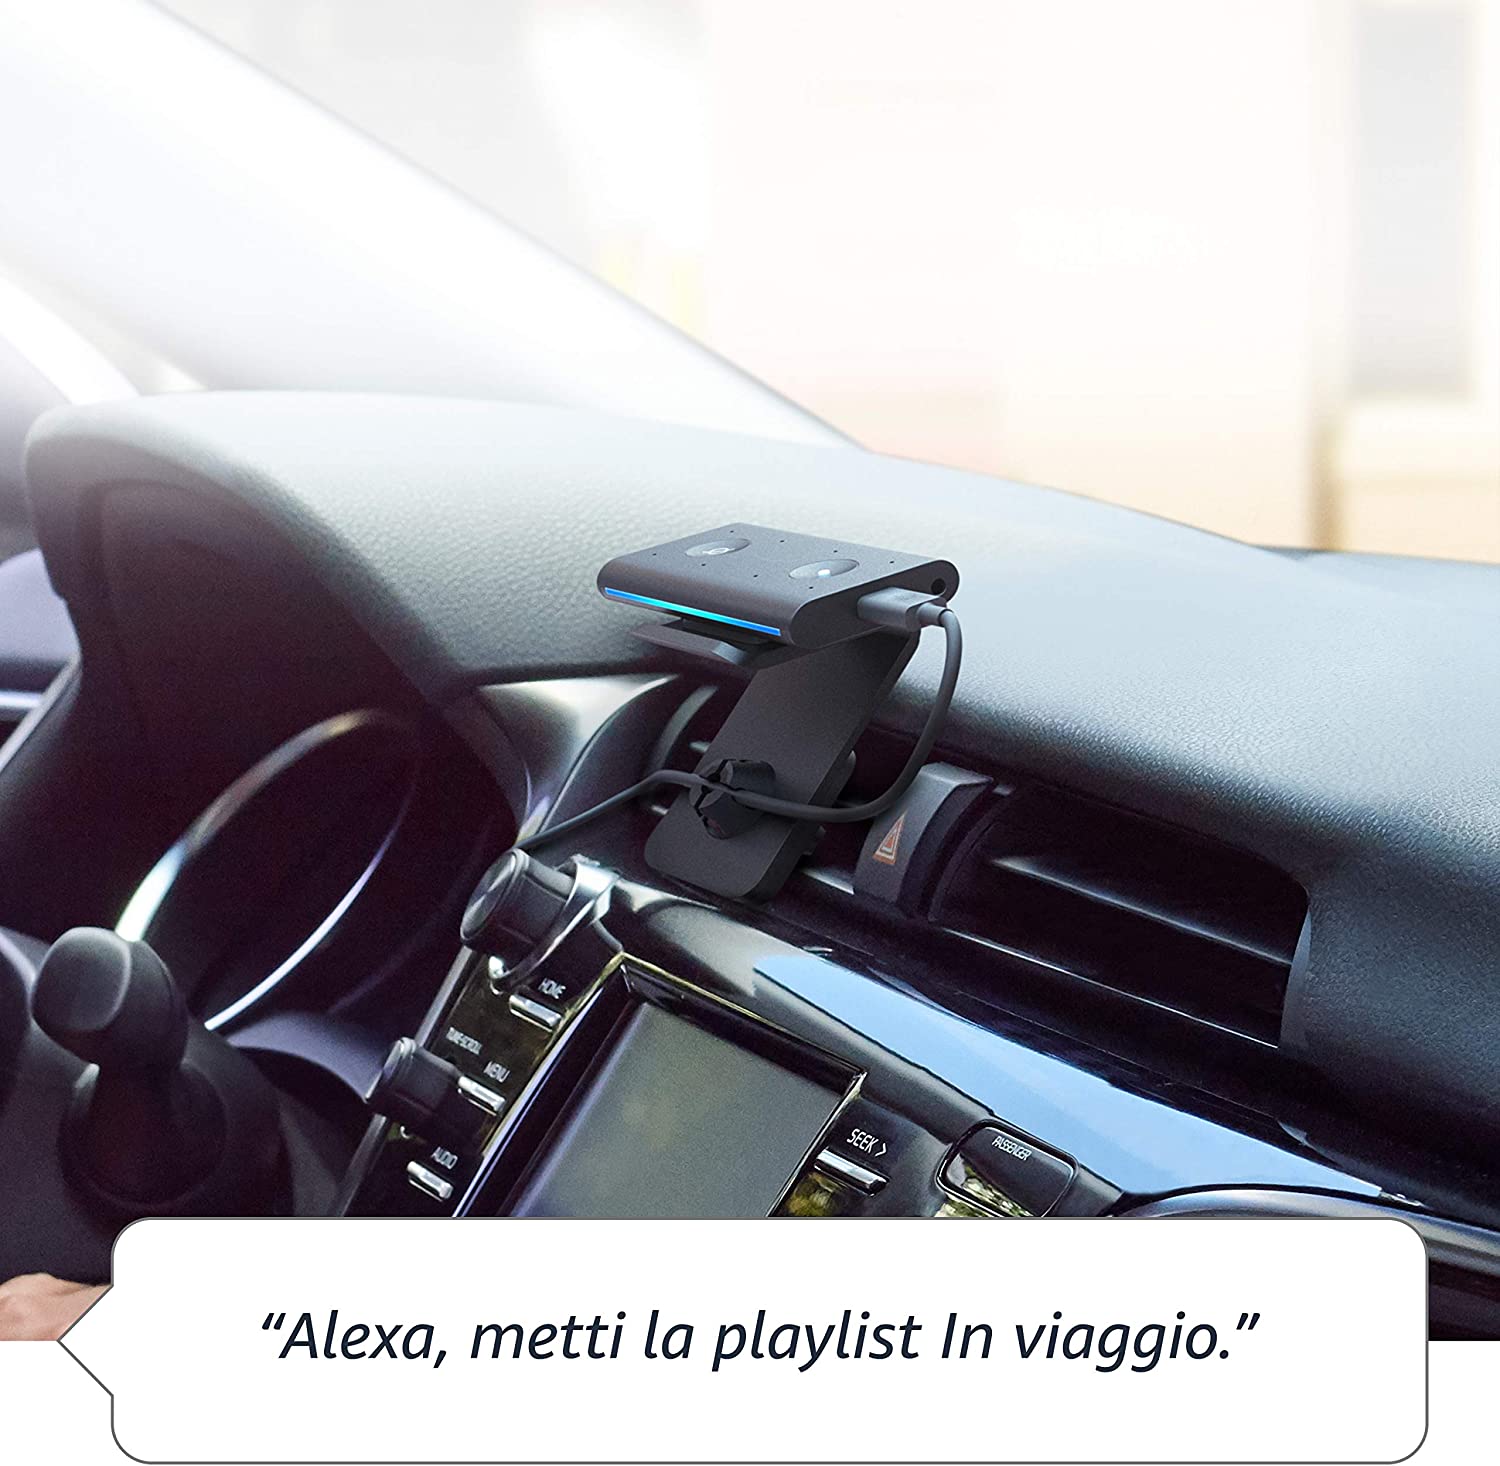 Echo Auto al 50% di SCONTO: porta Alexa in viaggio con te